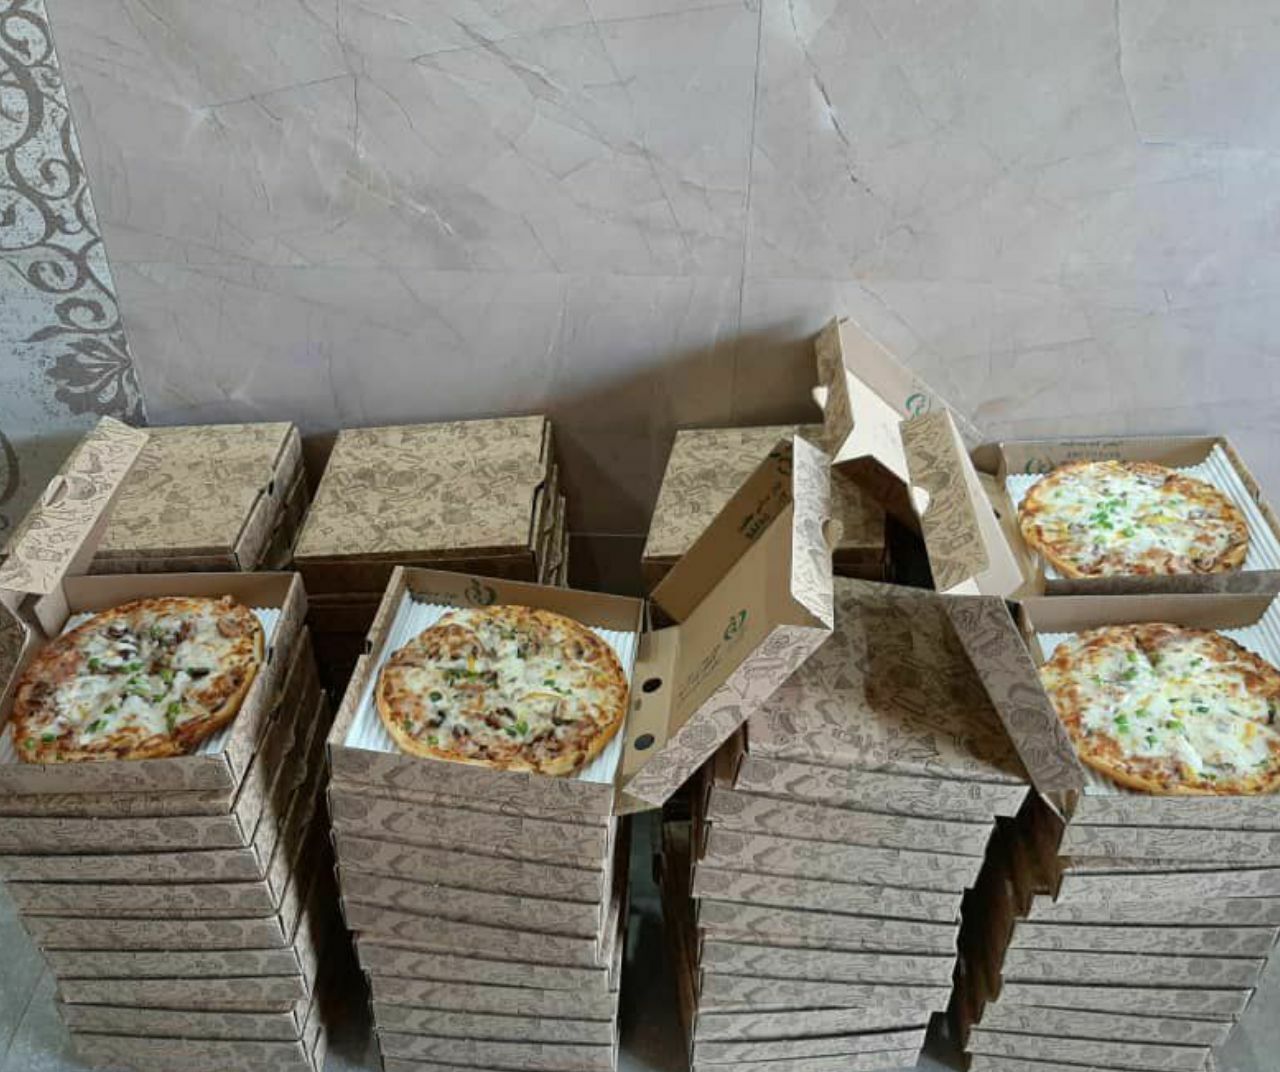 جمعی از کودکان مشهدی در راستای رسیدن به آرزوی خود پیتزا هدیه گرفتند